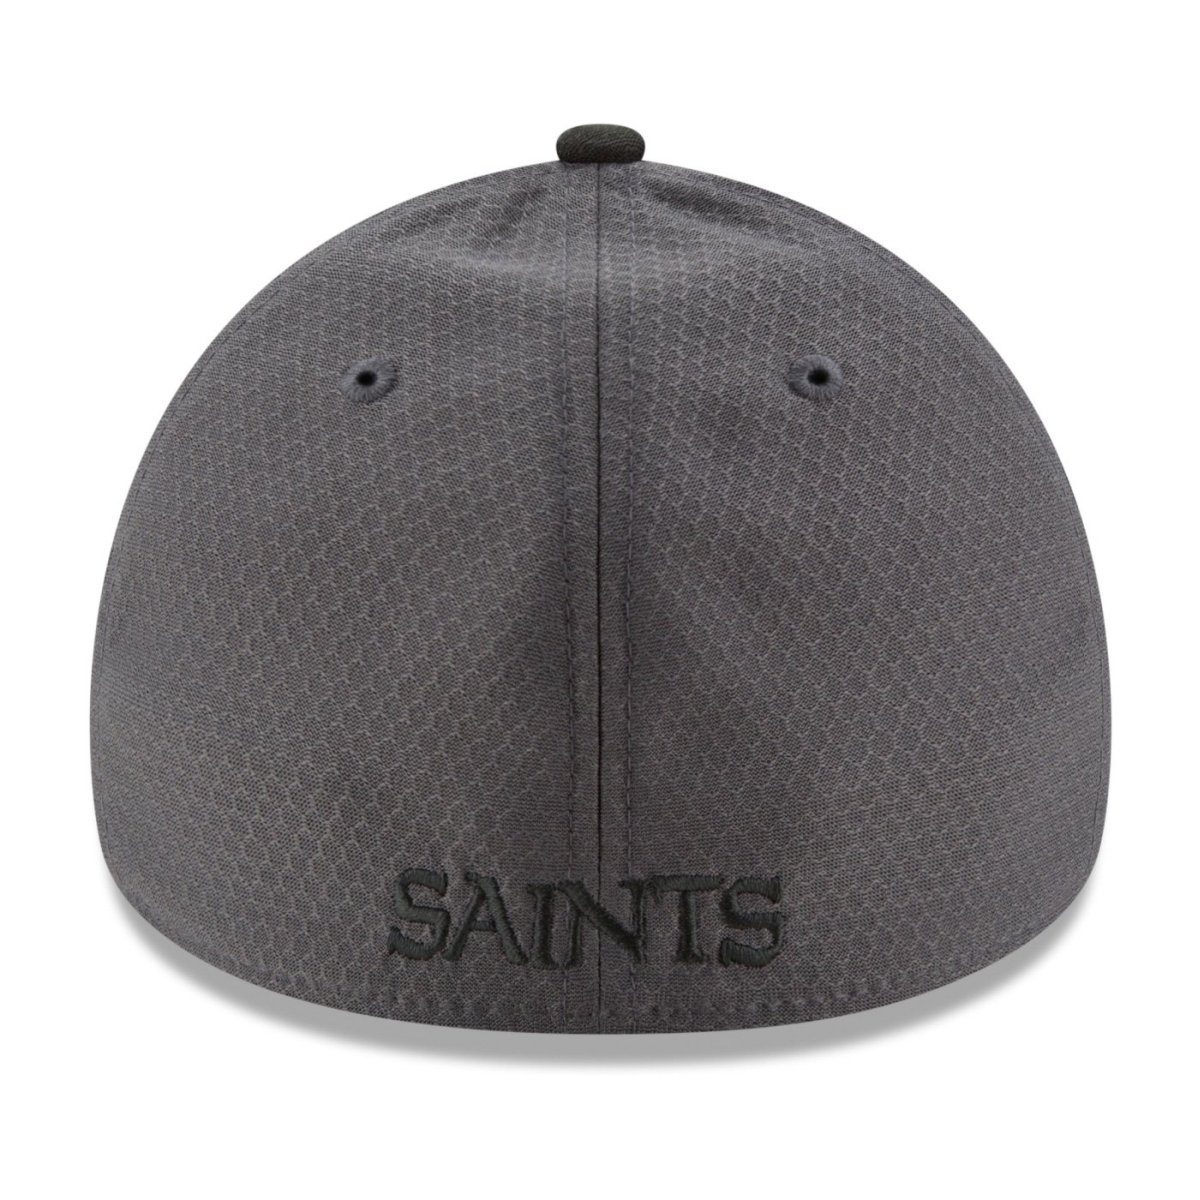 39Thirty Saints Flex New New Cap NFL SIDELINE Era Orleans